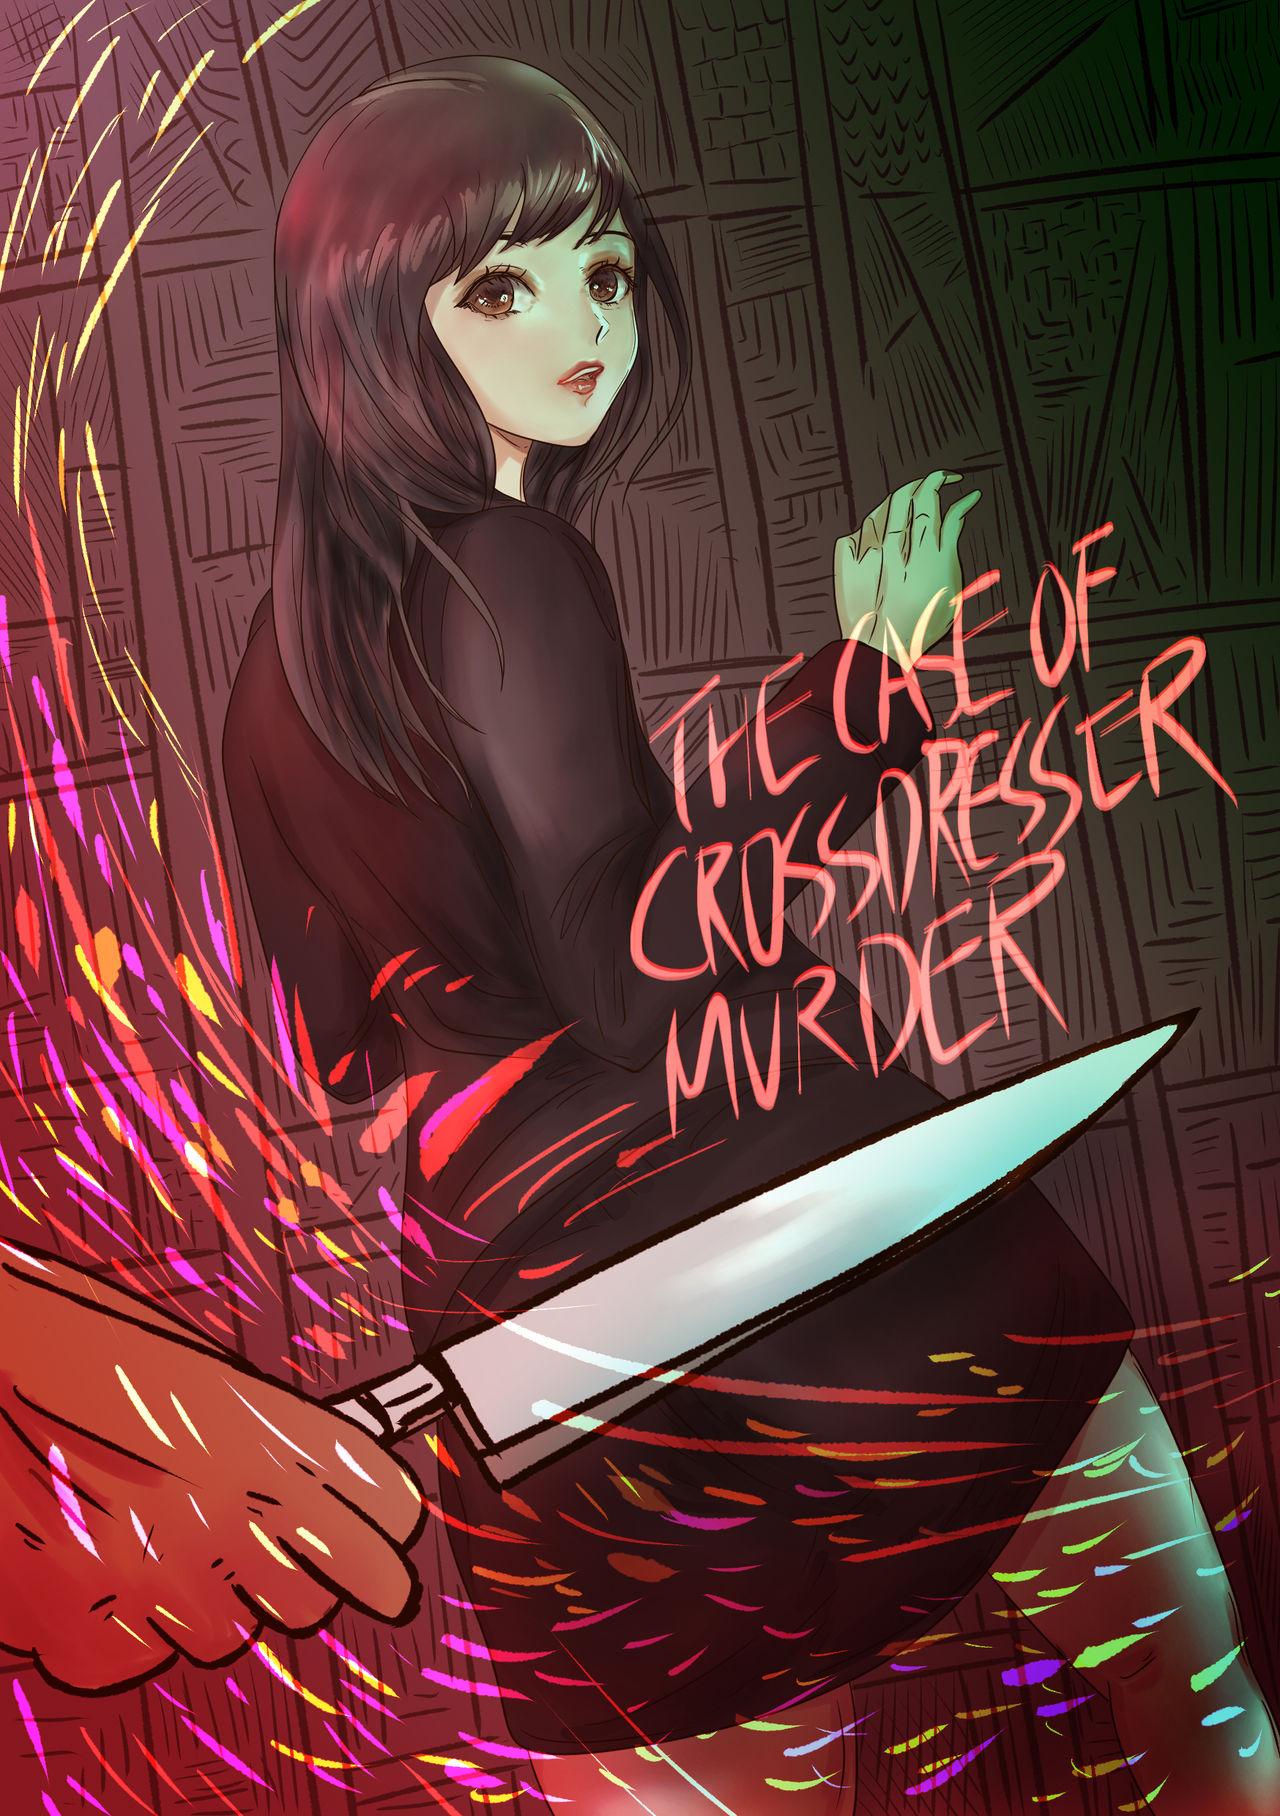 The case of crossdresser murder 2